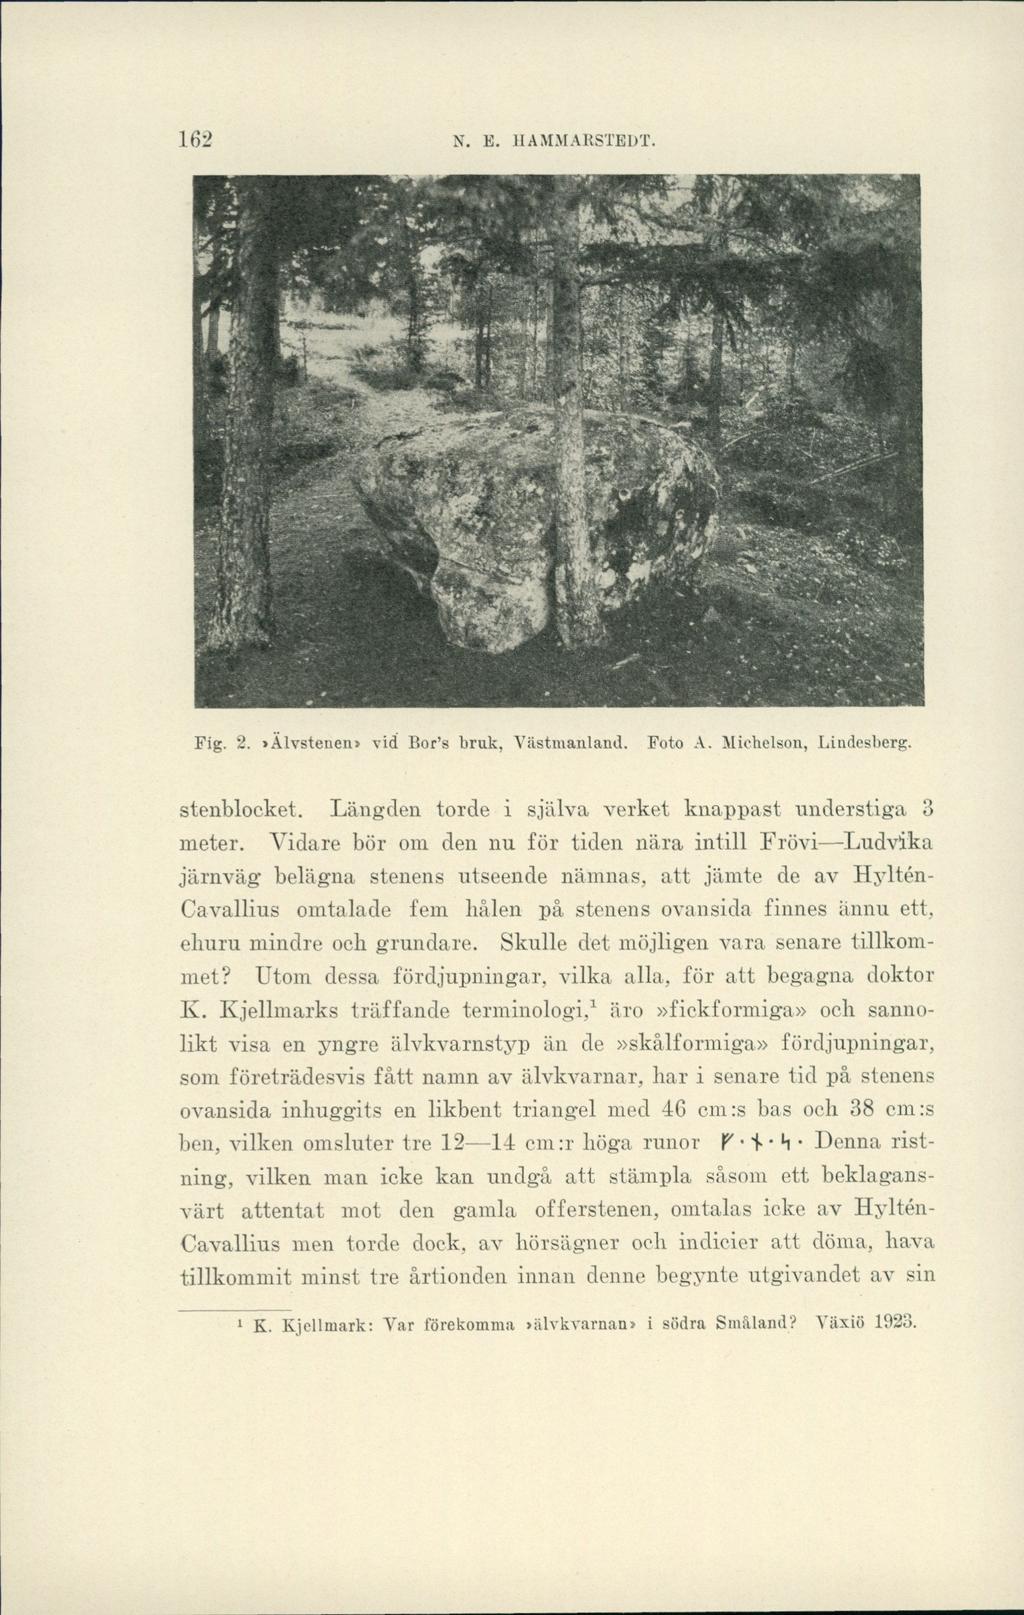 N. E. HAMMARSTEDT., < * Pig. 2.»Alvstenen» vid Bor s bruk, Västmanland. Foto A. Michelson, Lindesberg. stenblocket. Längden torde i själva verket knappast understiga 3 meter.